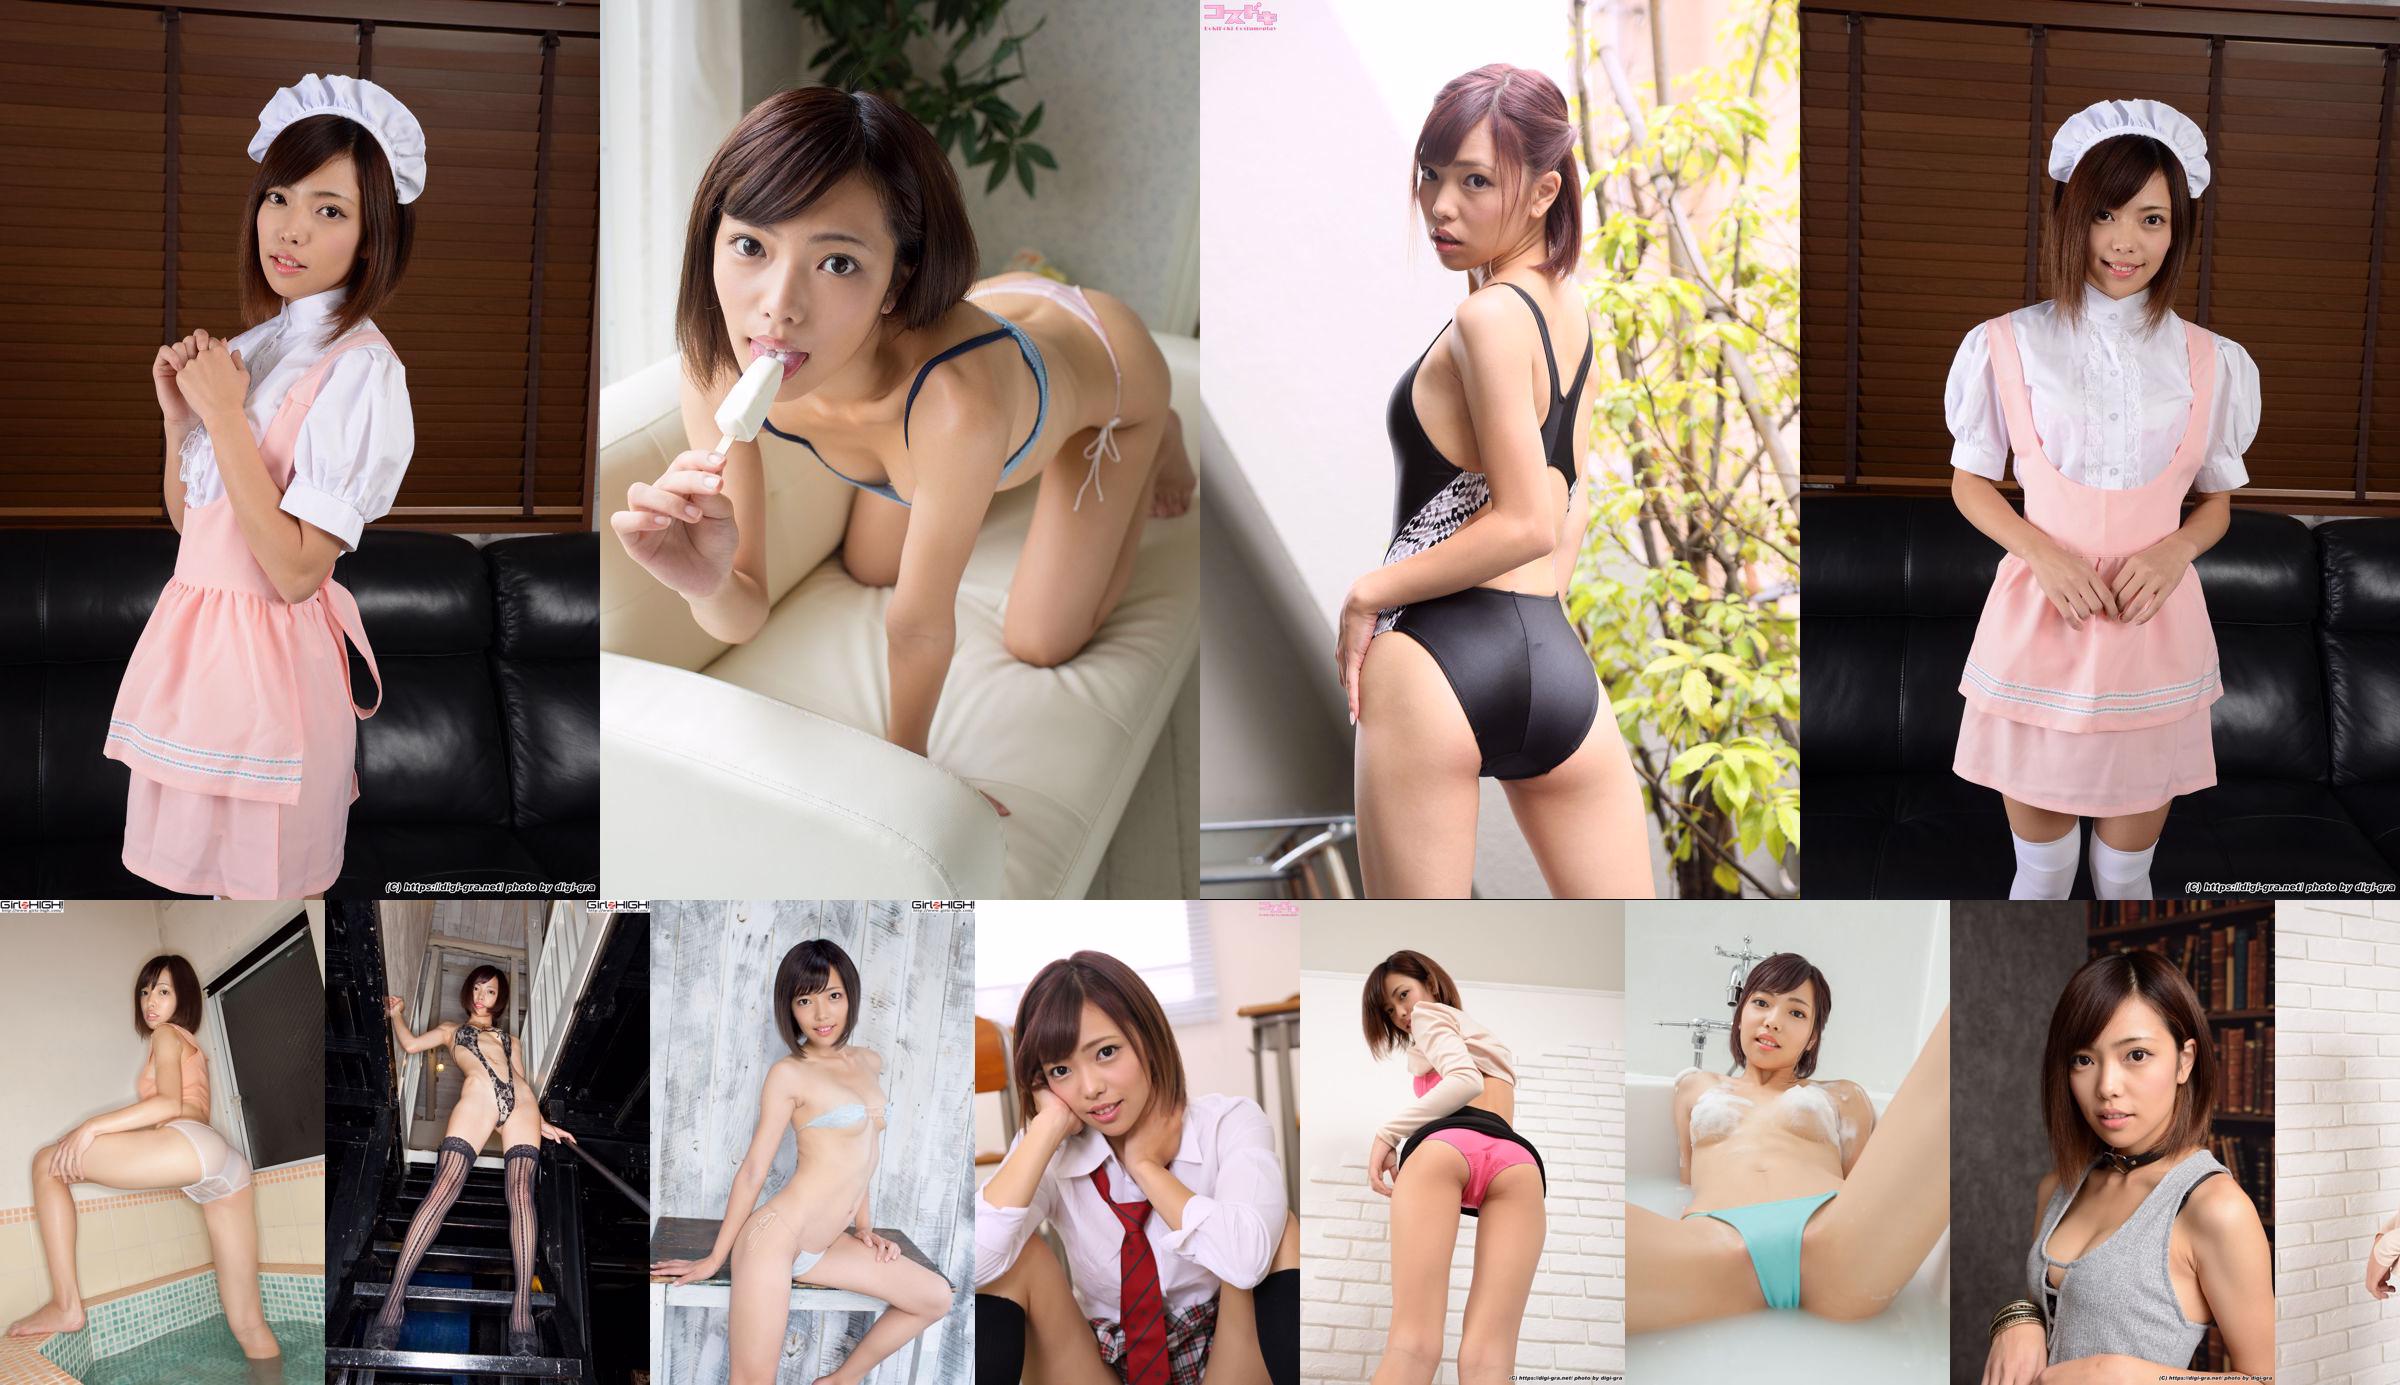 Aya Hirose Aya Hirose "Vest Temptation" [Minisuka.tv] No.6c0855 Halaman 1